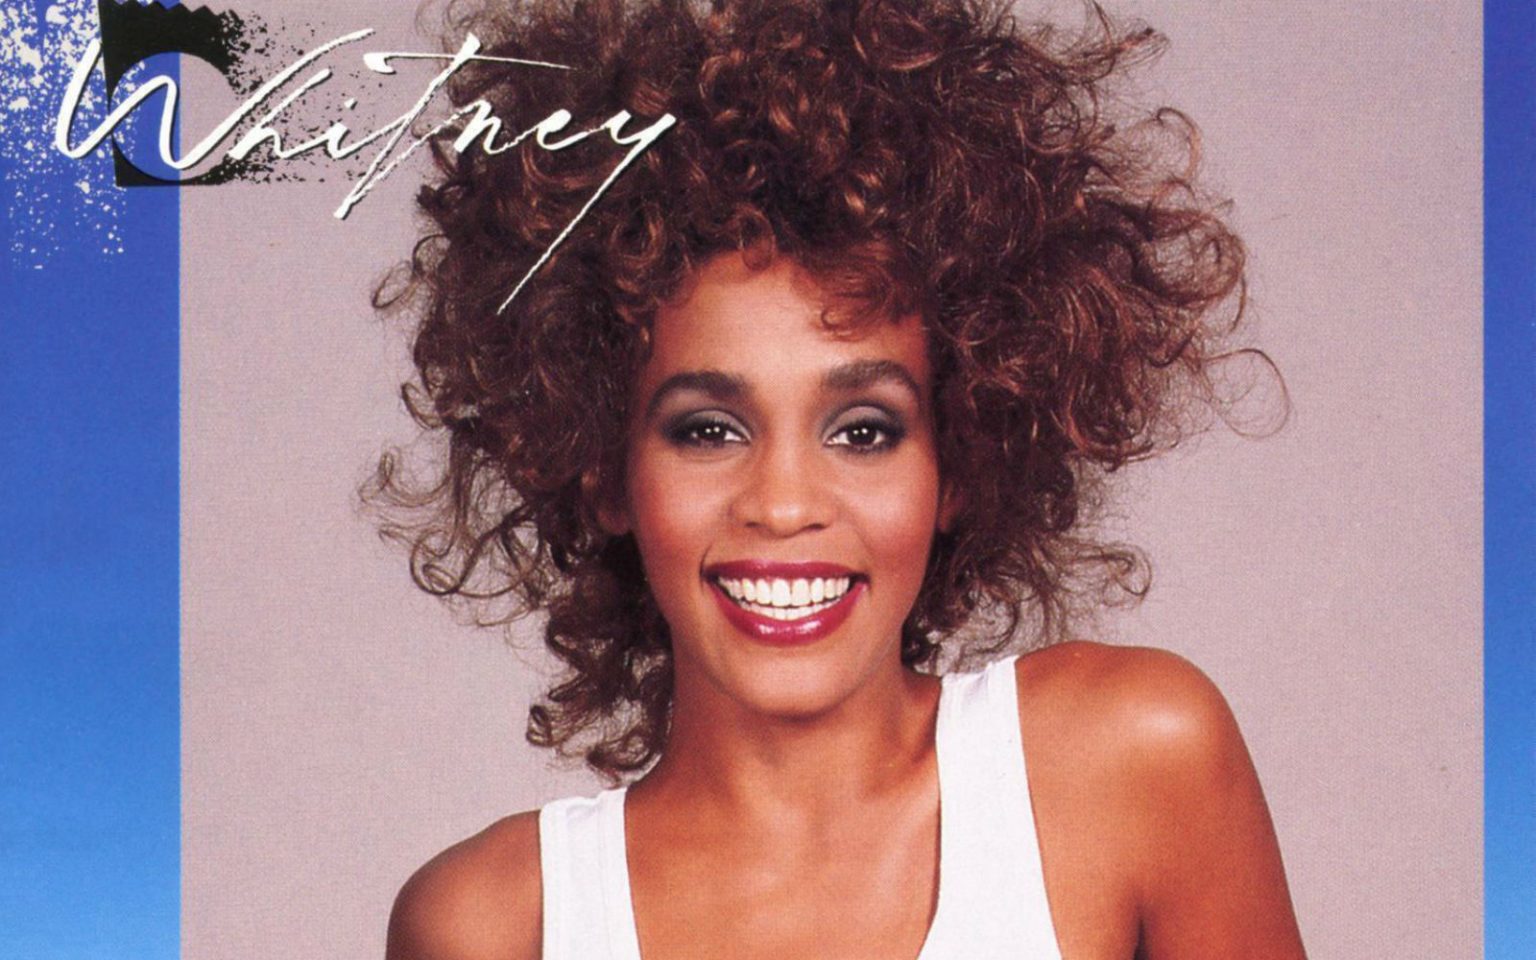 El guardaespaldas: A 30 años del debut de Whitney Houston en el cine